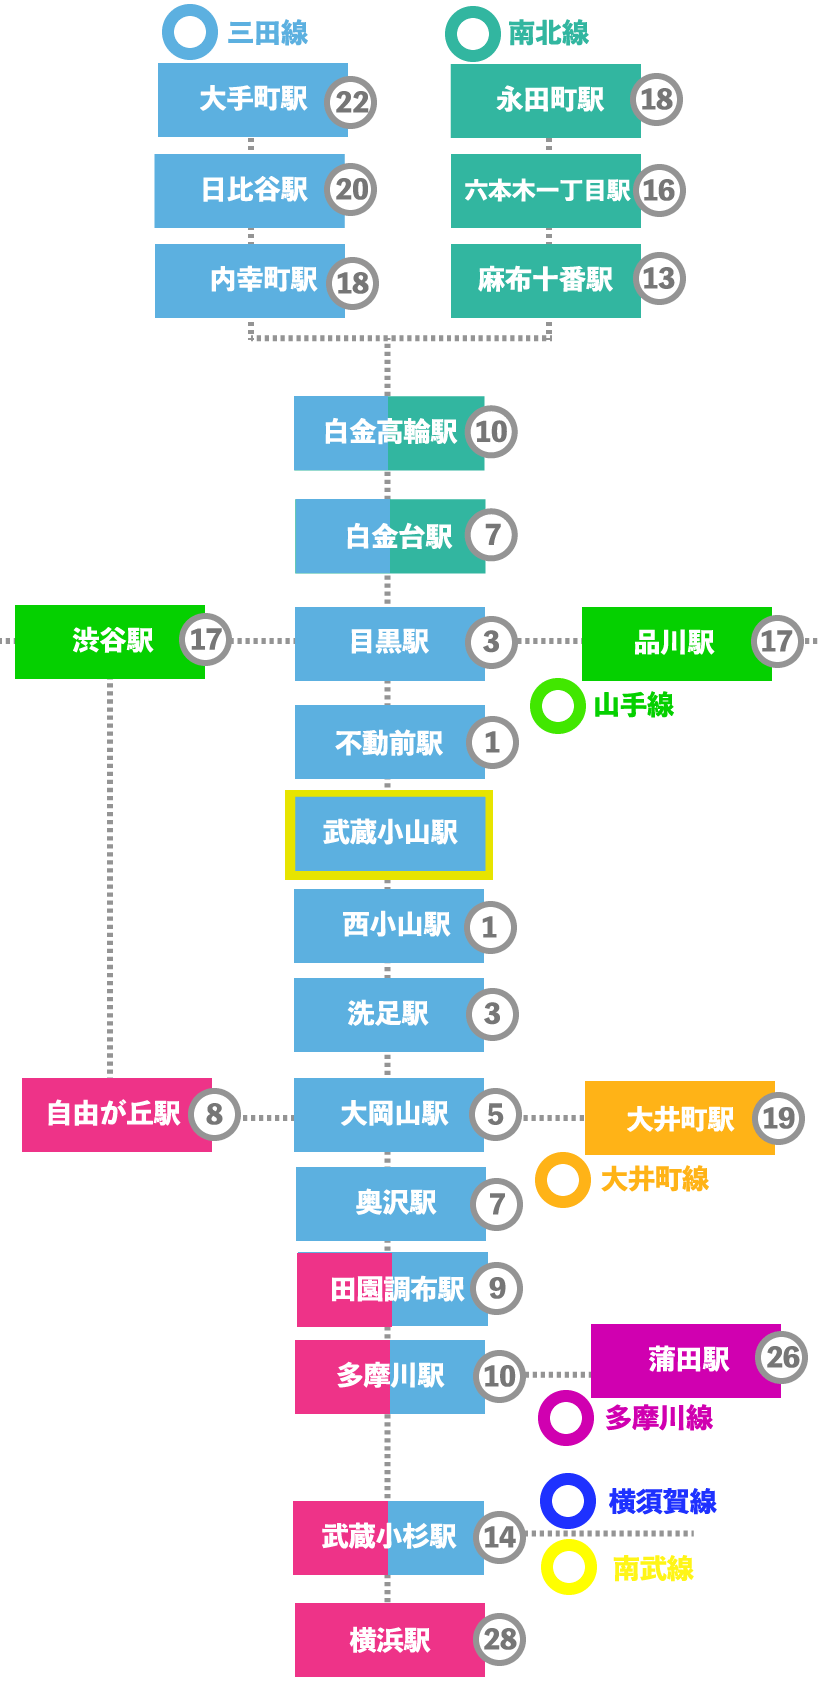 この画像は武蔵小山駅から都心へのアクセスマップです